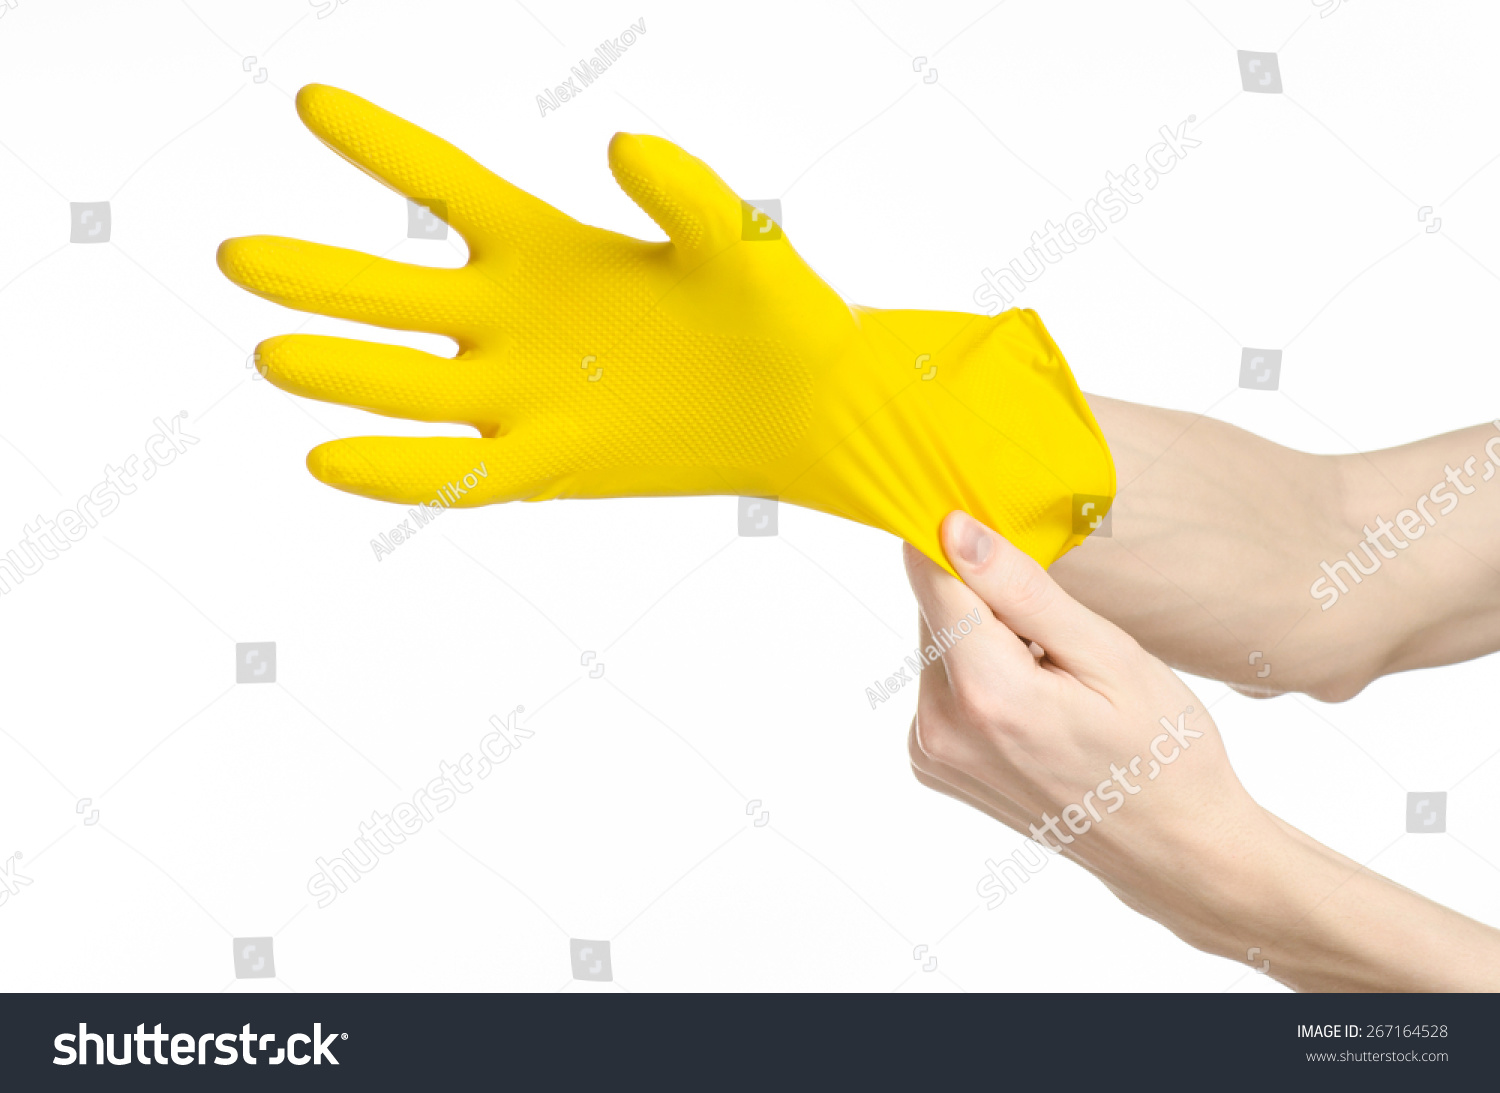 Желтое запястье. Перчатки резиновые ношаные. Рука жолтий. Девушка одевает резиновые перчатки.